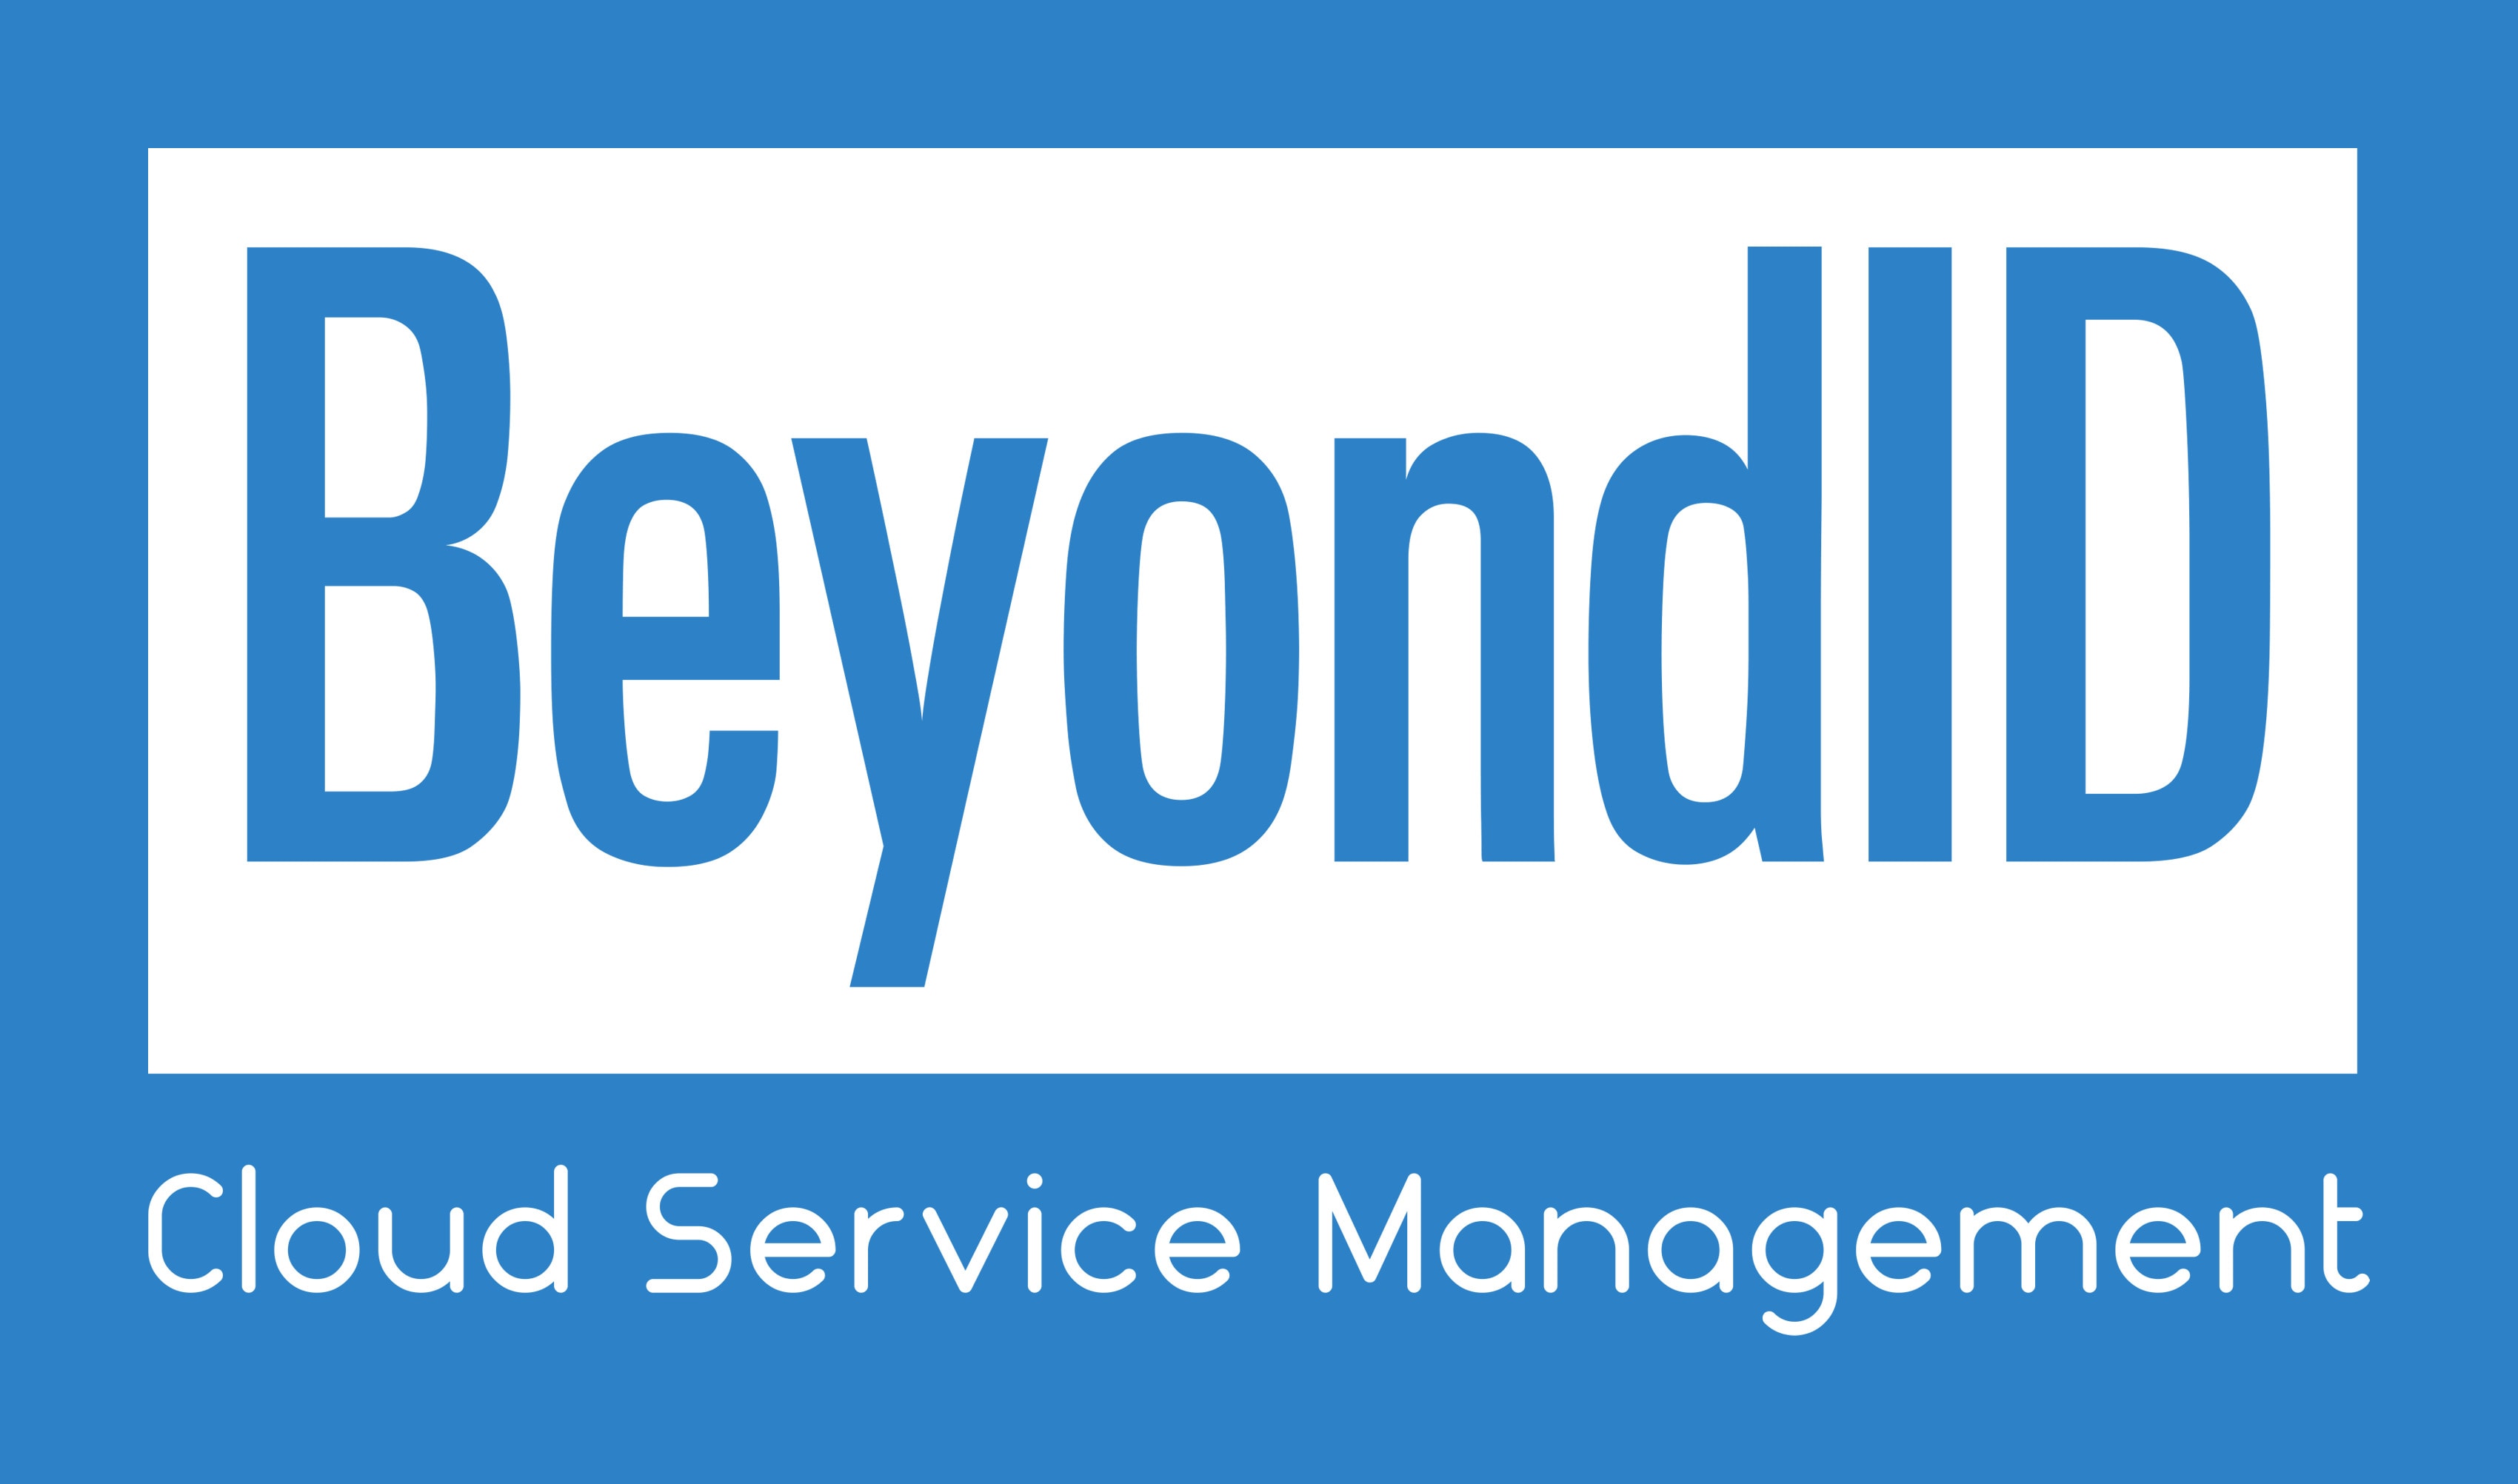 BeyondID logo